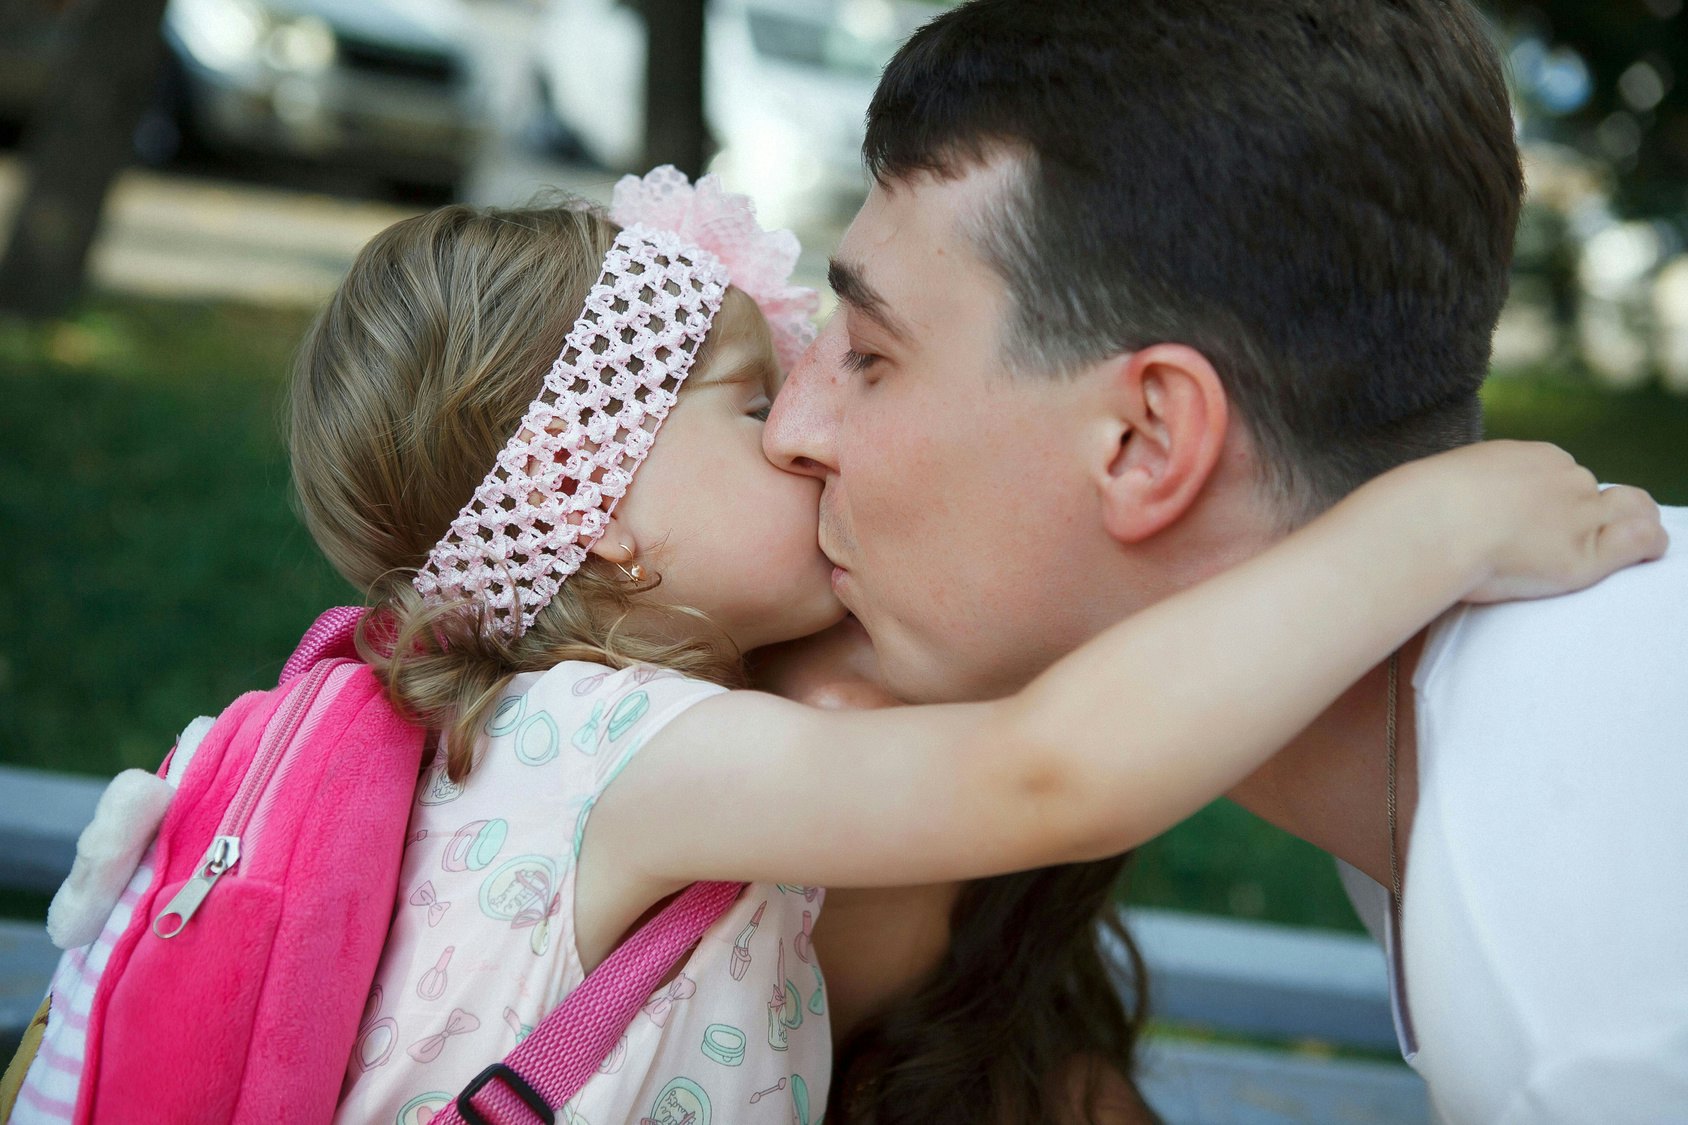 Daughter daddy video. Поцелуй папу. Папа с дочкой Реал. Поцелуй папы и Дочки.